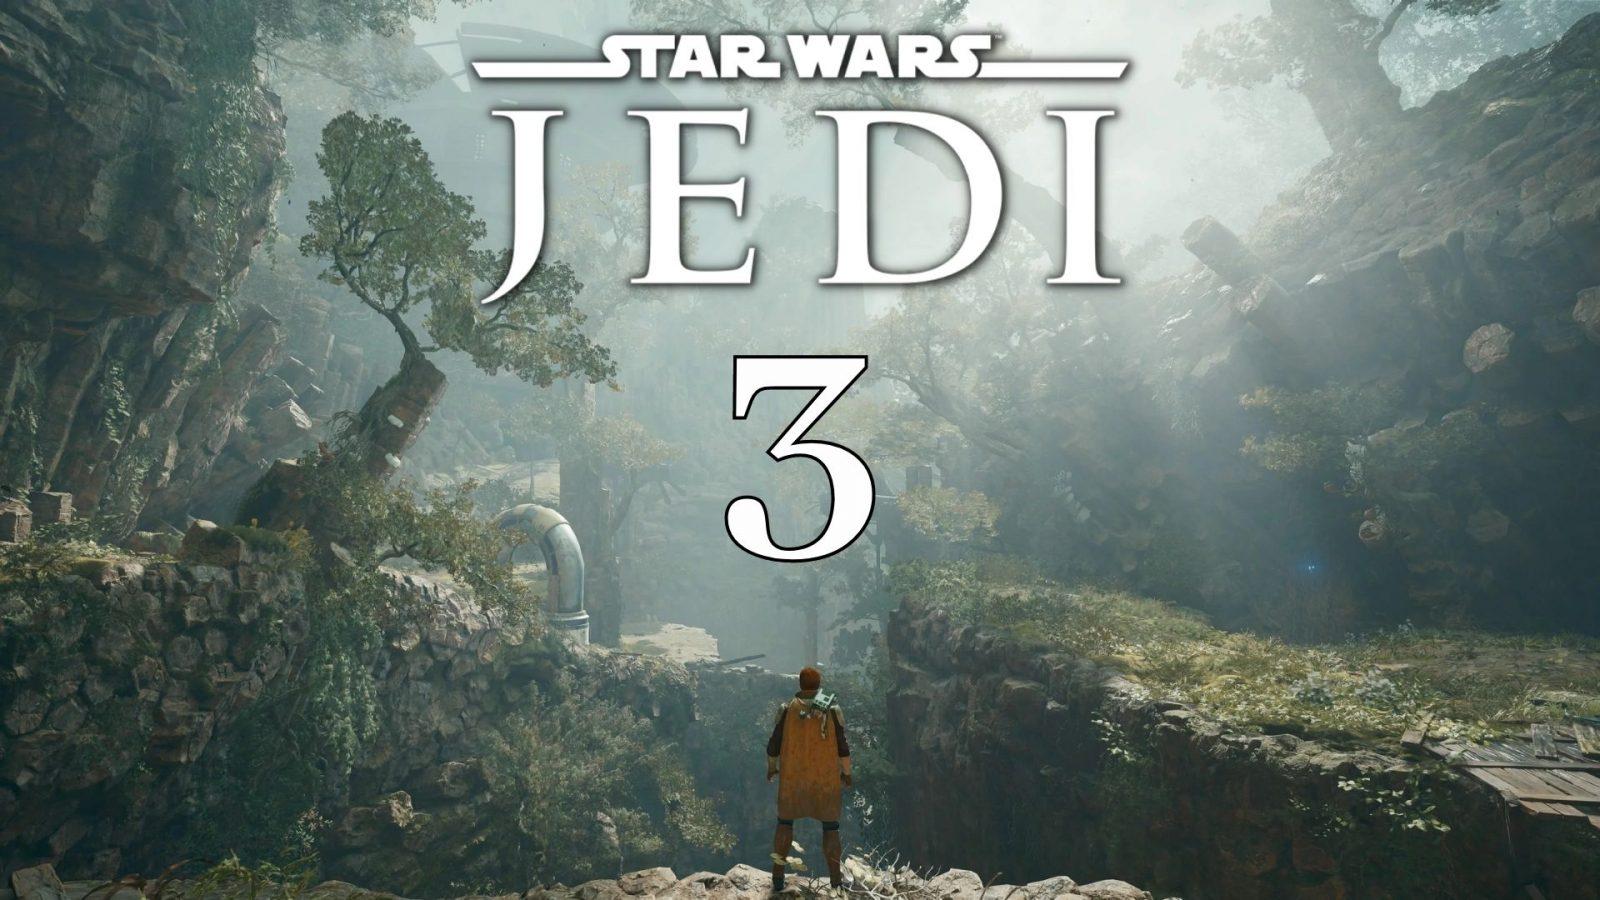 star wars jedi 3 sequel potential cover title